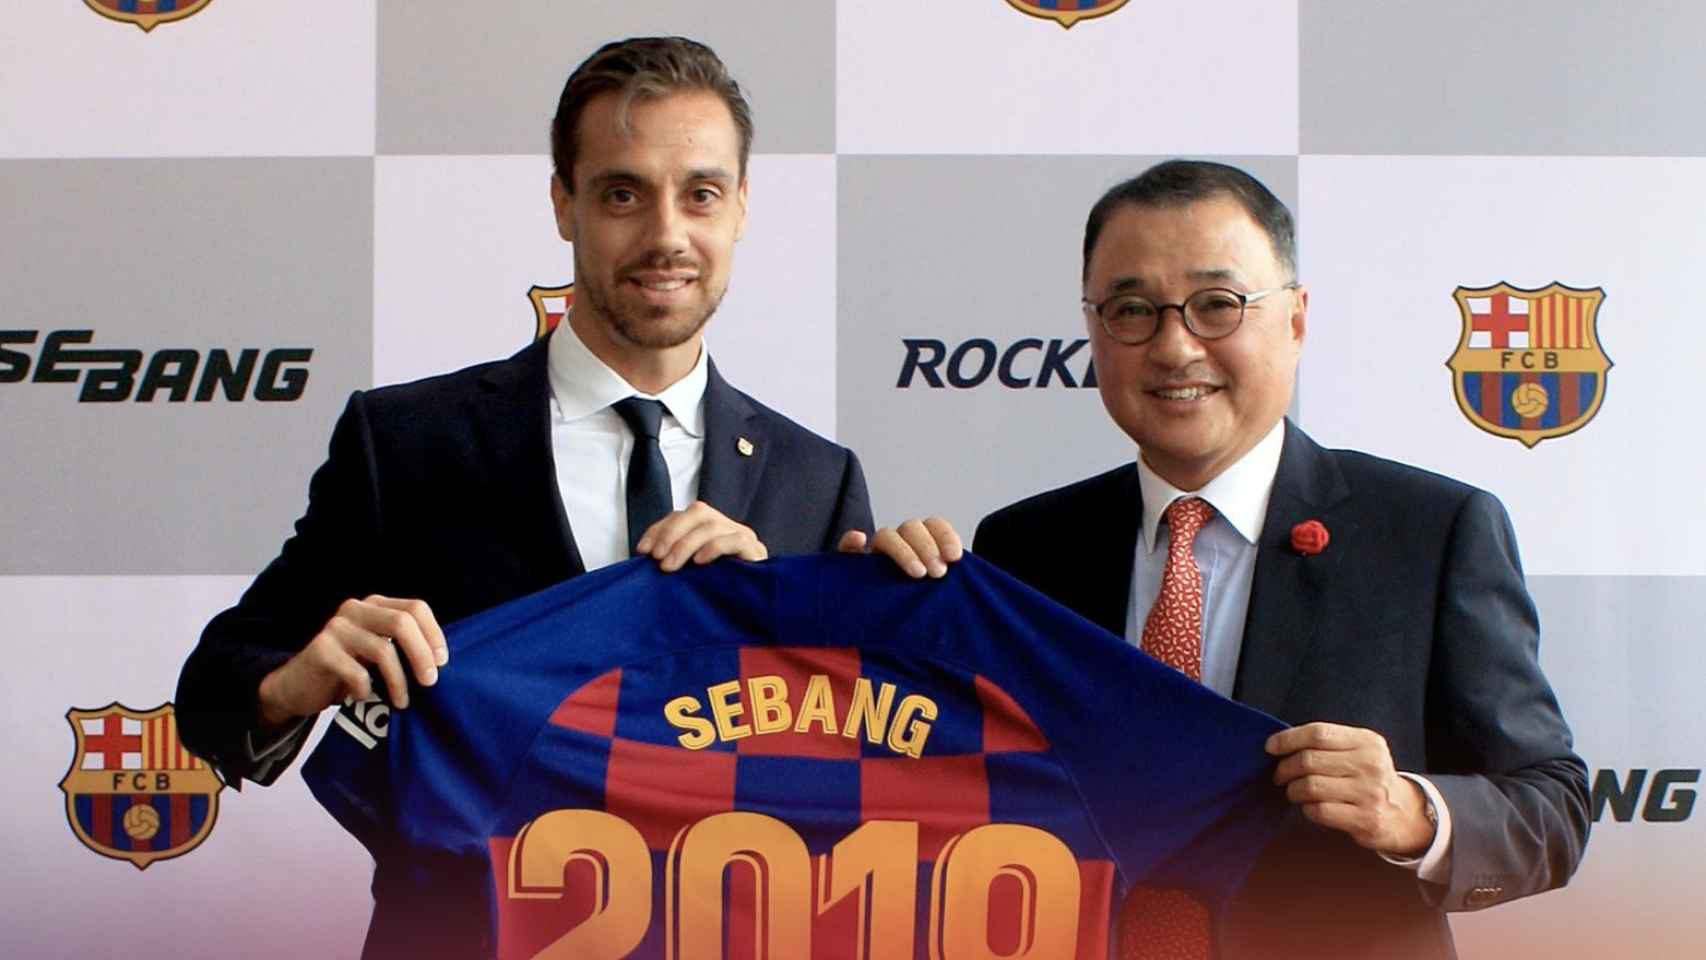 Una foto del acuerdo entre el FC Barcelona y Sebang /FCB